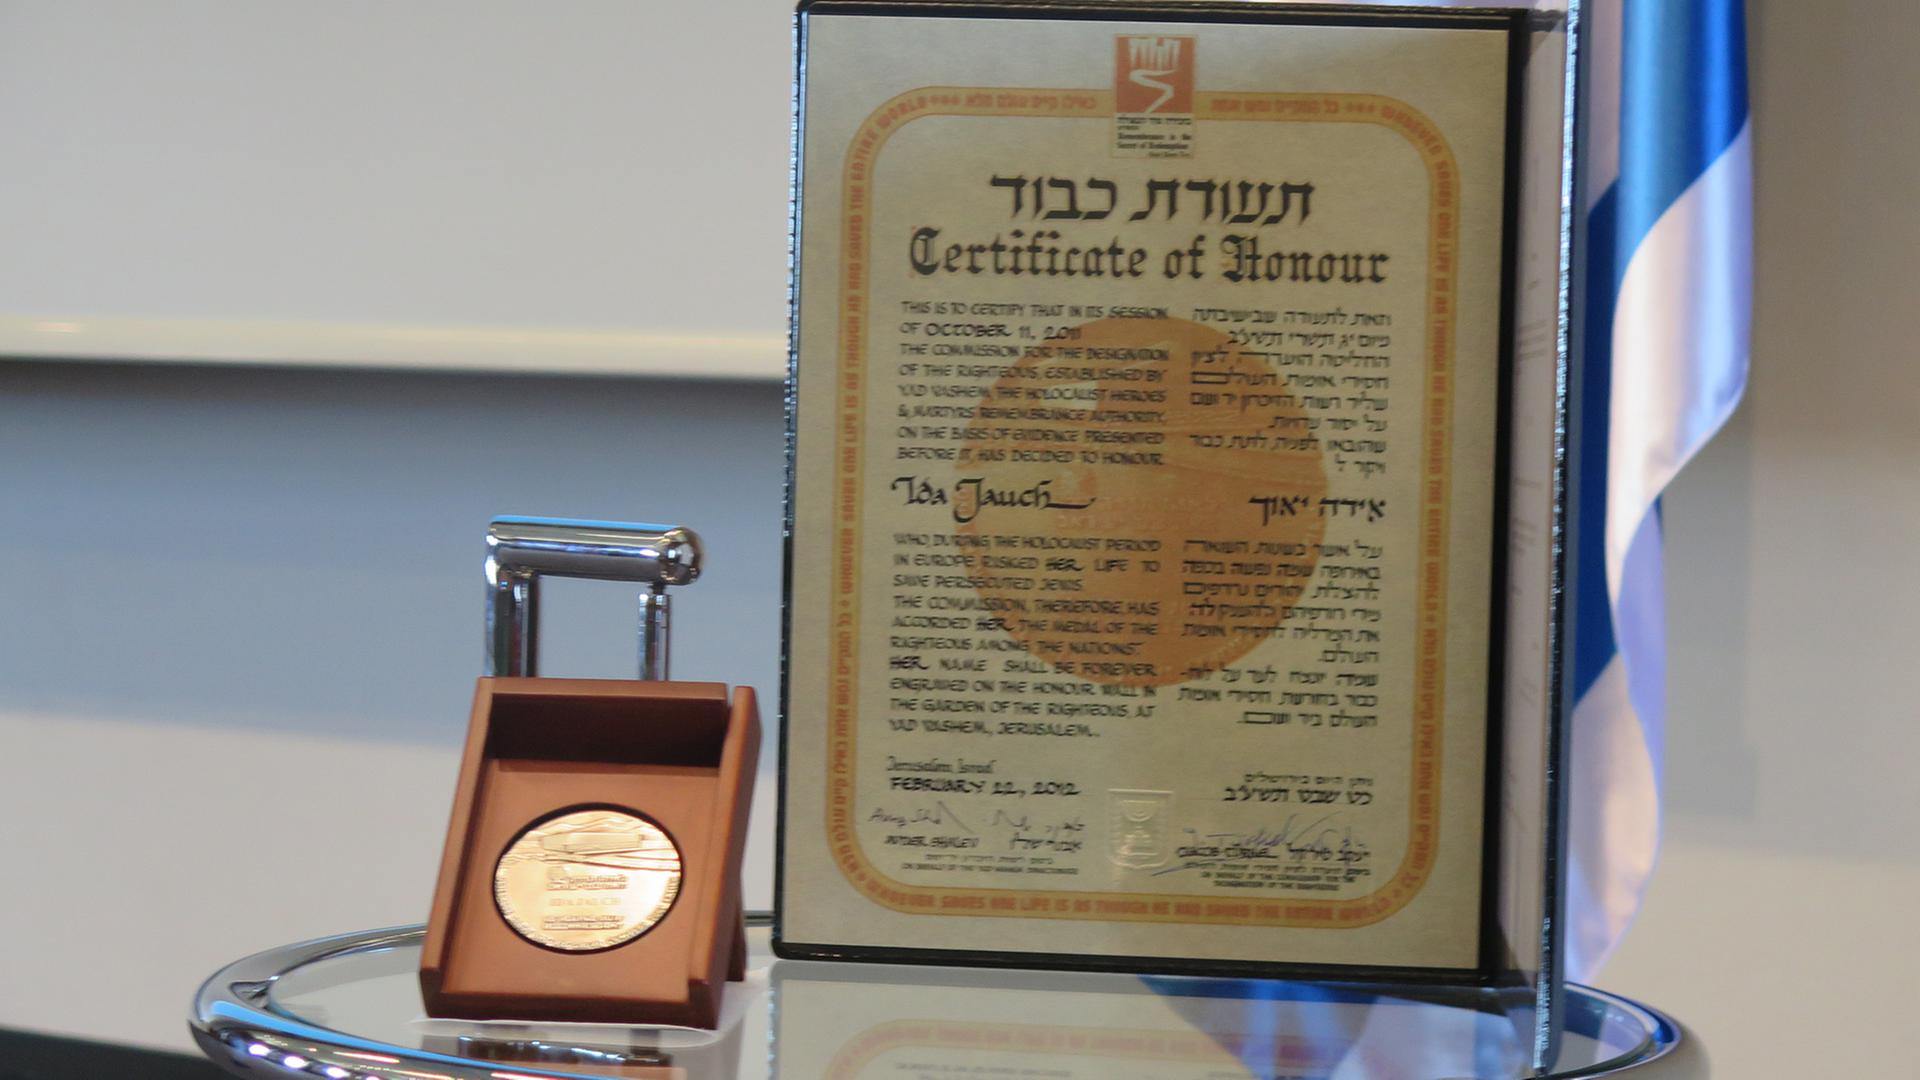 Die Urkunde und Medaille für Ida Jauch, die als "Gerechte unter den Völkern" ausgezeichnet wurde.